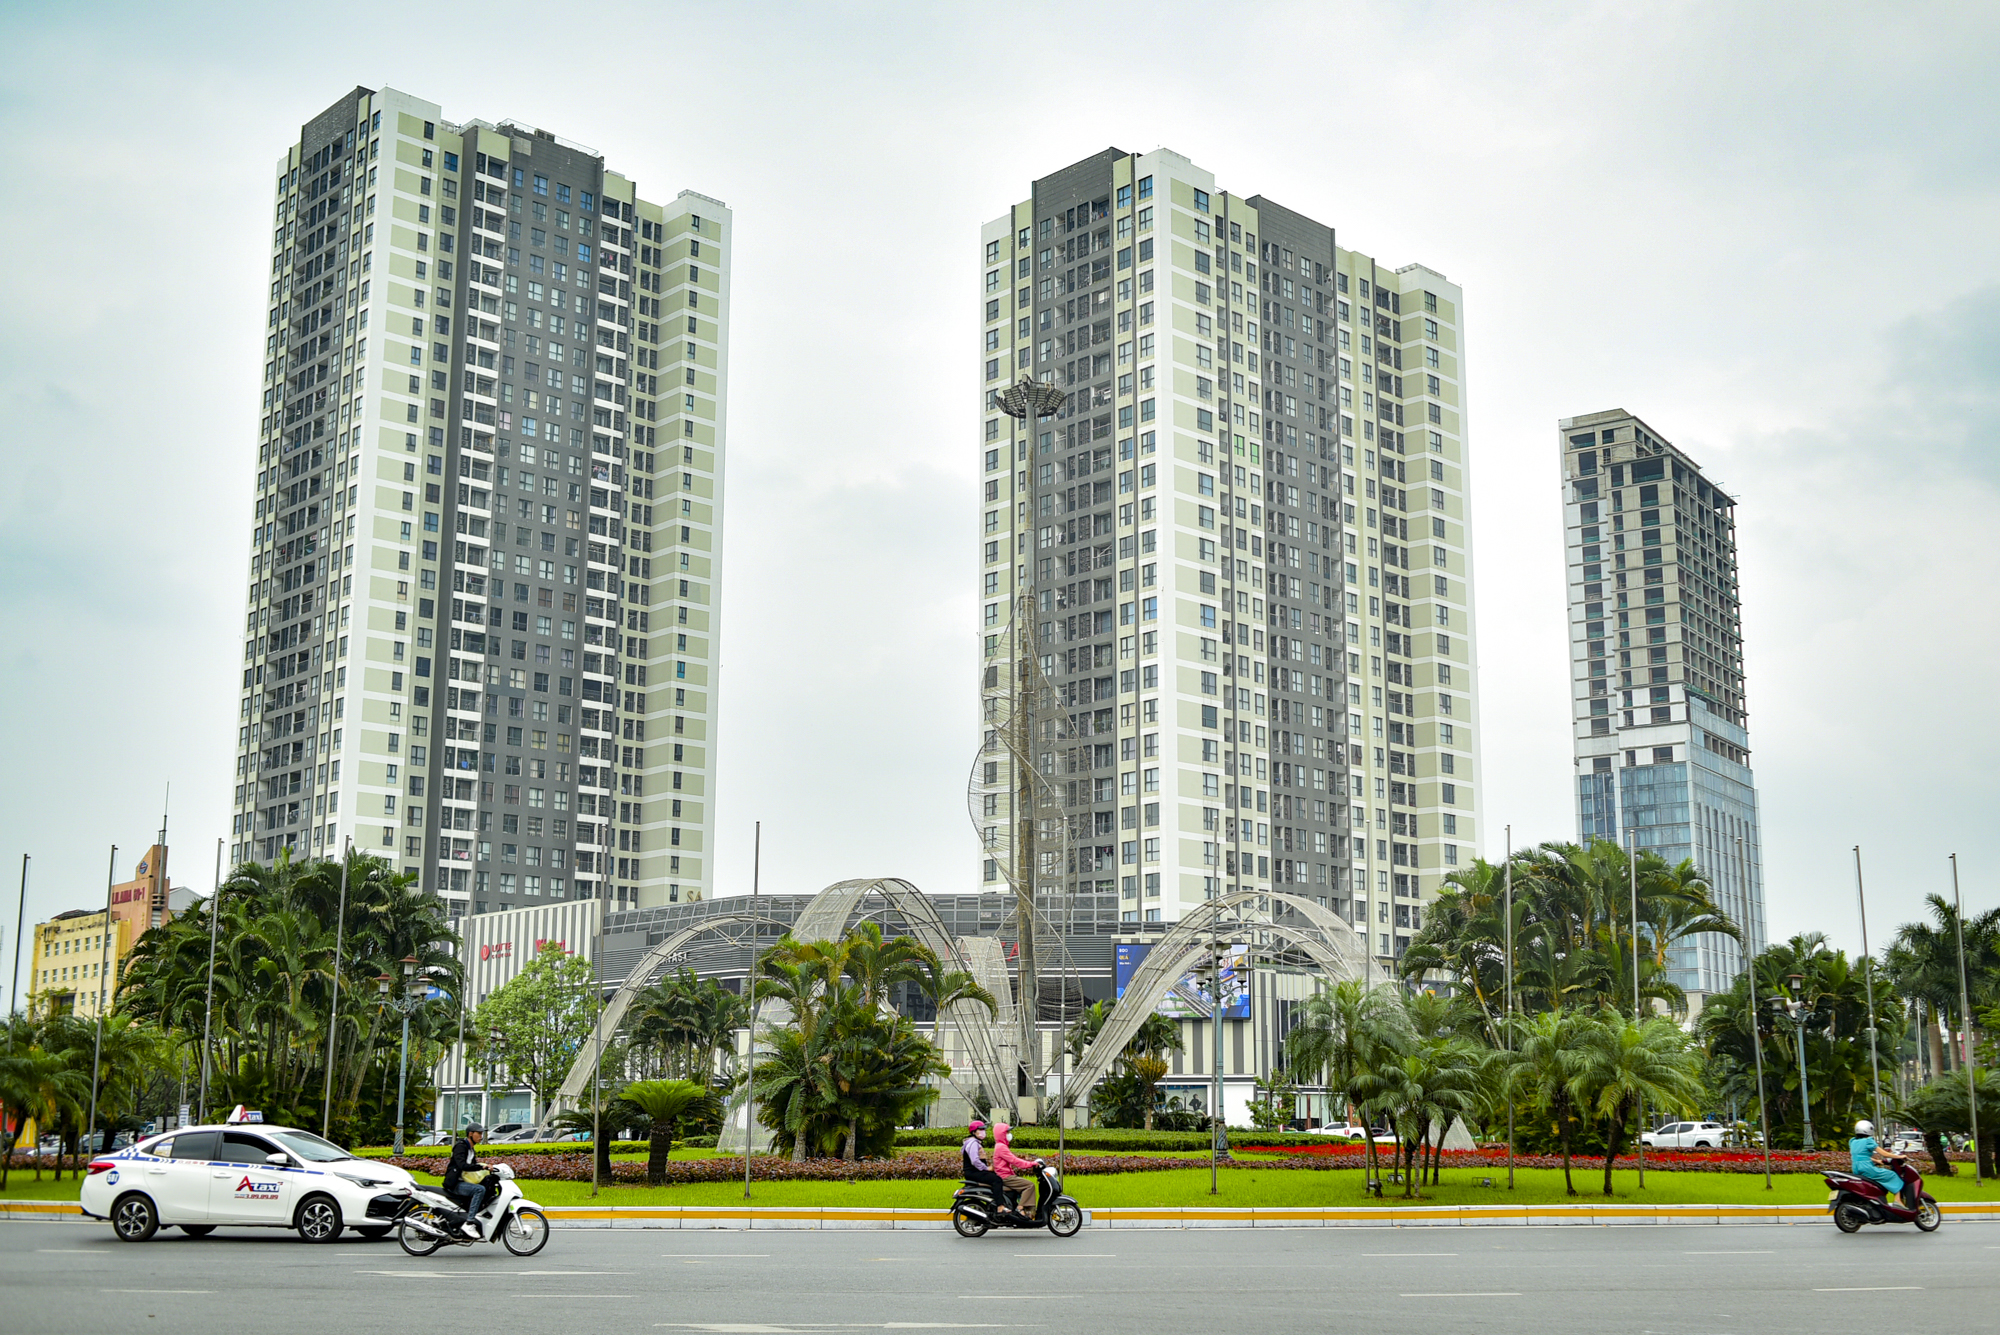 Khu vực trung tâm của trung tâm tỉnh sắp lên thành phố: Có khu hành chính độc đáo bậc nhất Việt Nam; Vingroup, Vietcombank phô diễn vị thế- Ảnh 4.